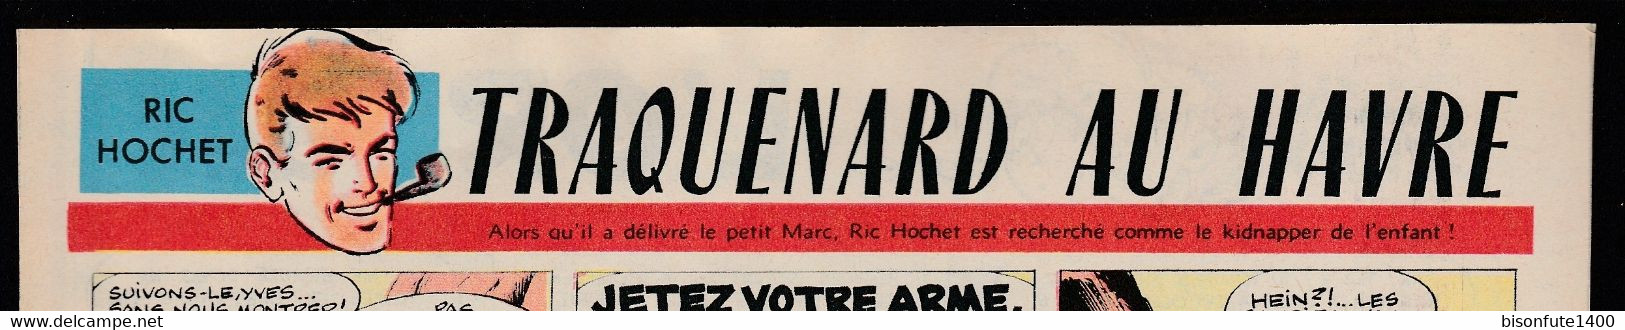 Bandeau Titre De Ric Hochet "Traquenard Au Havre" Datant De 1963 Et Inédit Dans Les Bandes Dessinées En Album. - Ric Hochet